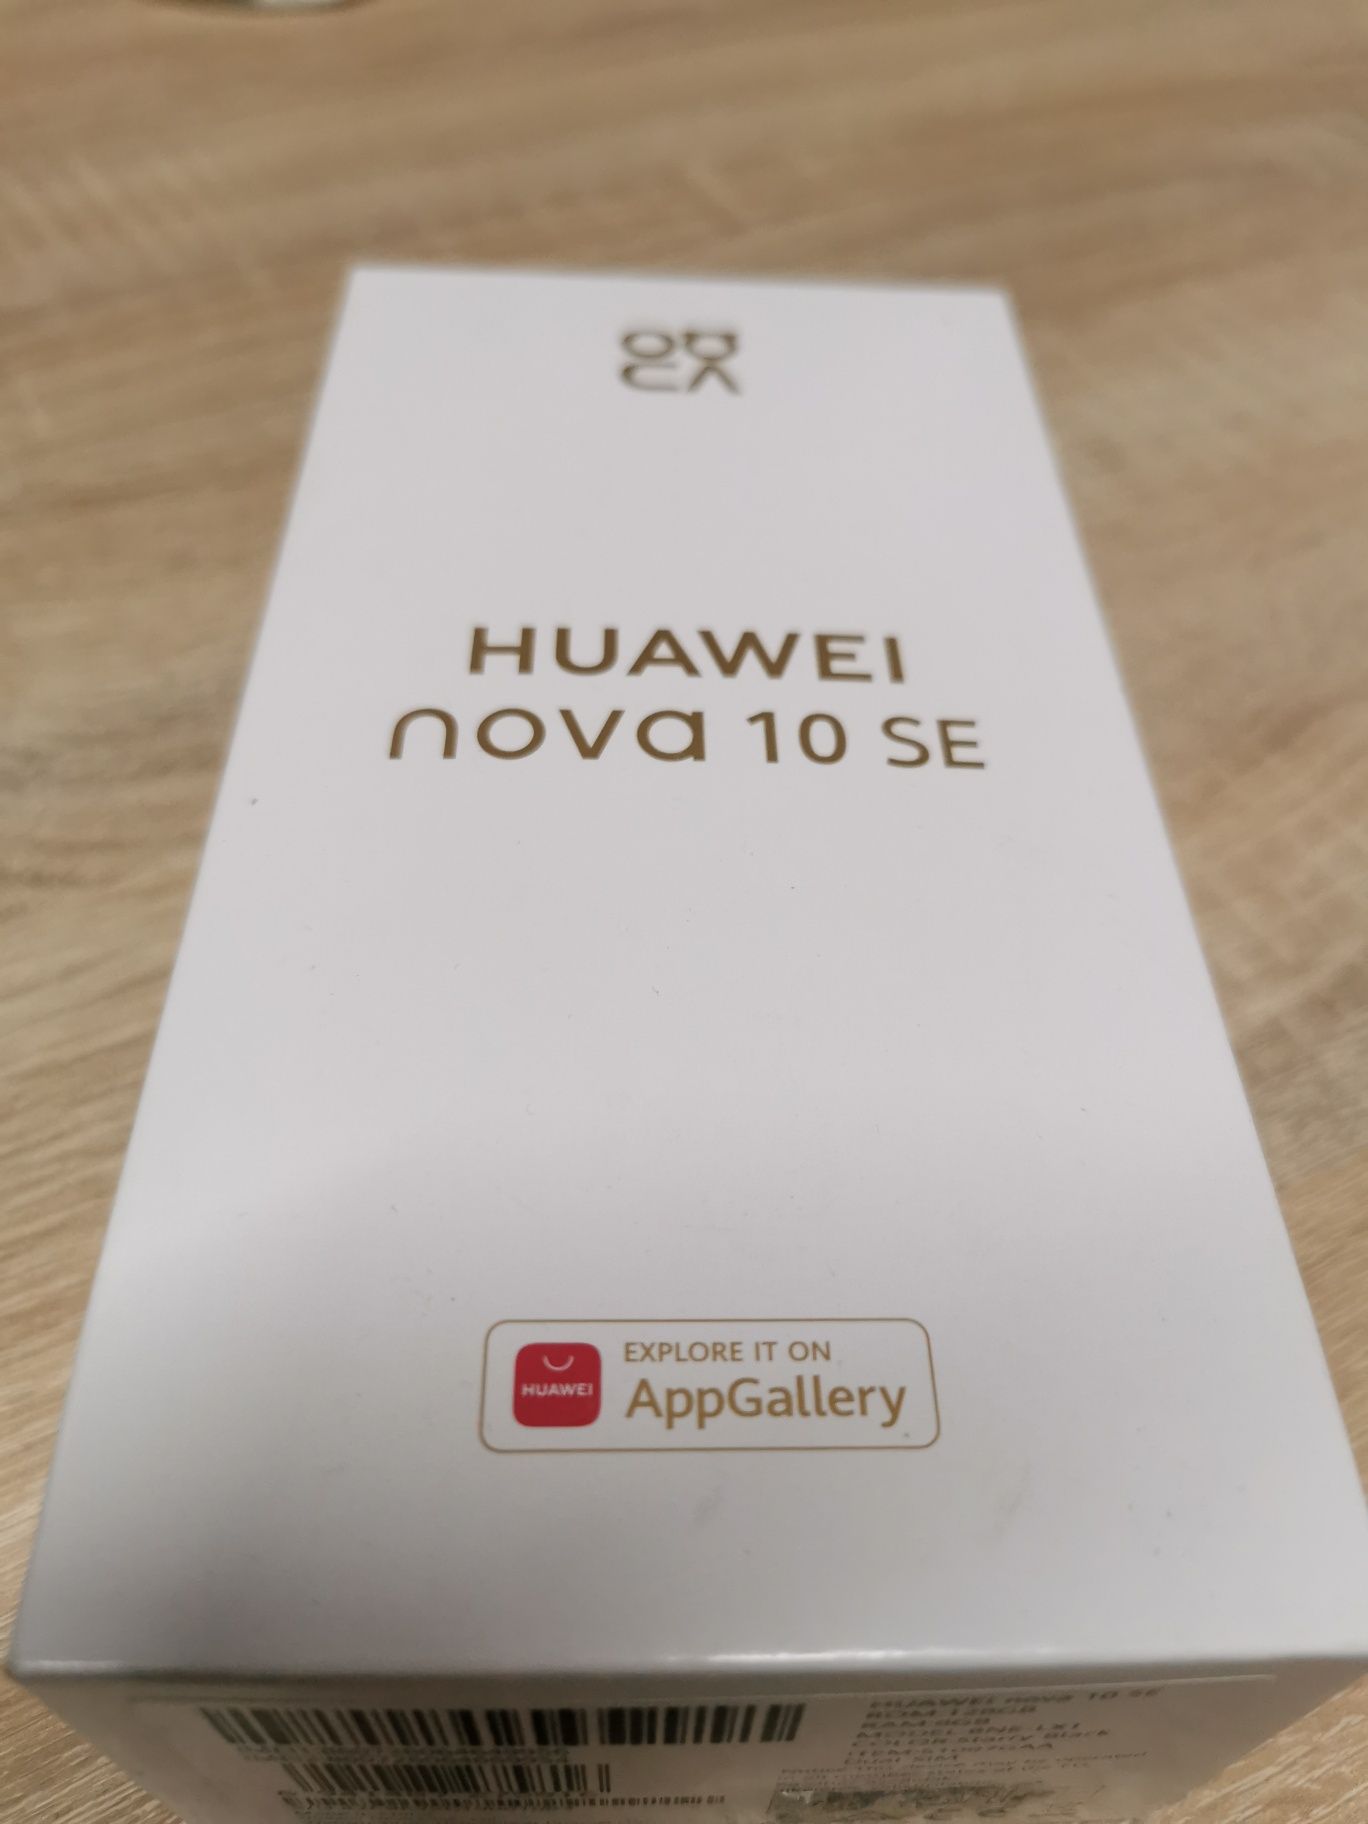 HUAWEI nova 10 SE 8/128GB smartfon